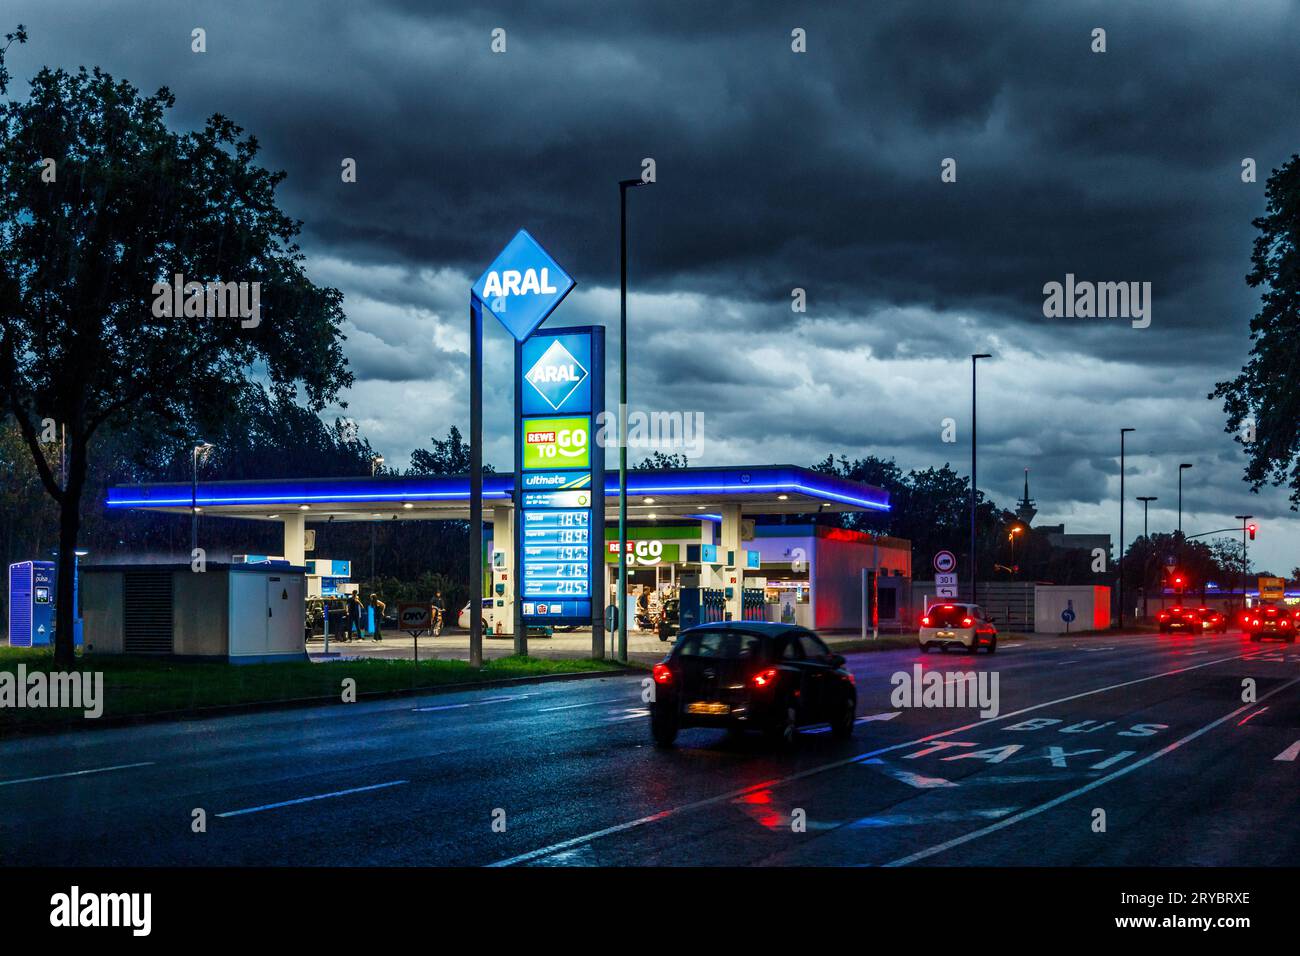 Gewitterfront über Düsseldorf, Aral Tankstelle Stock Photo